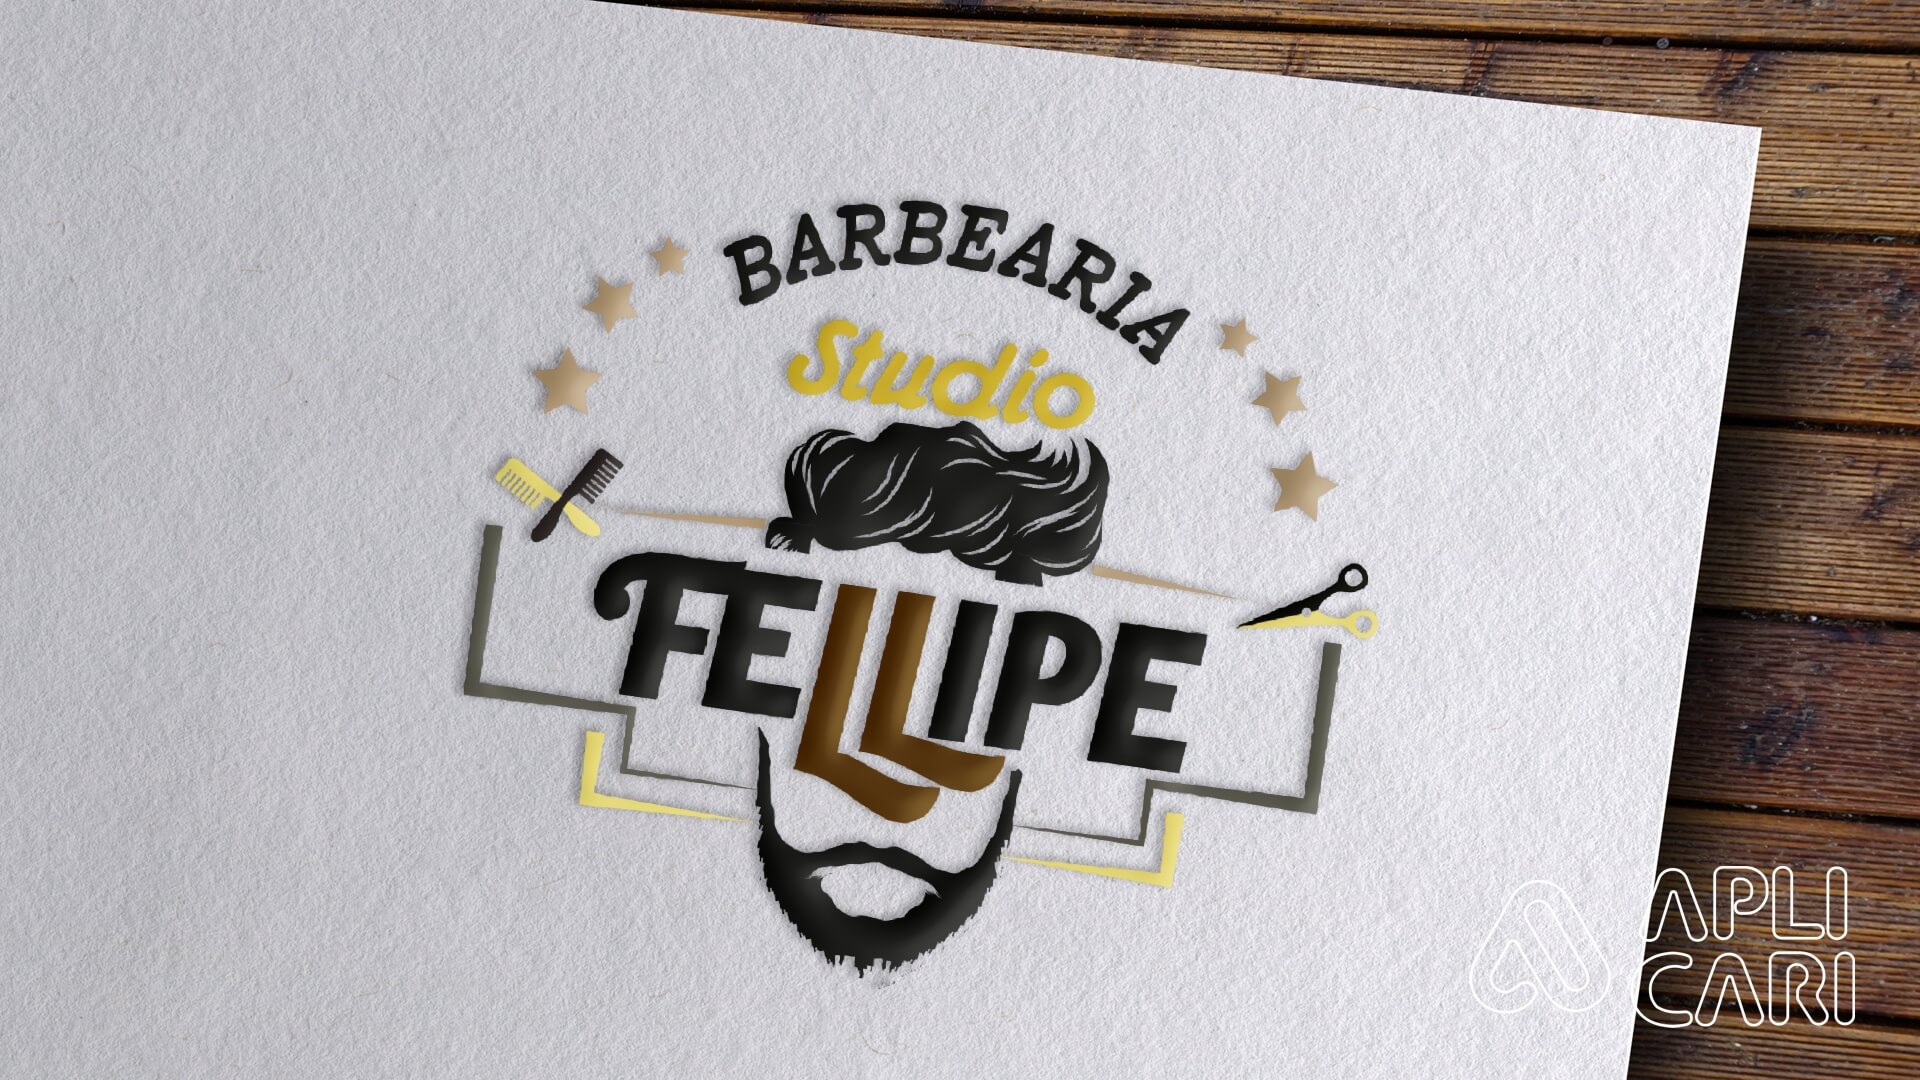 Barbearia Studio Fellipe